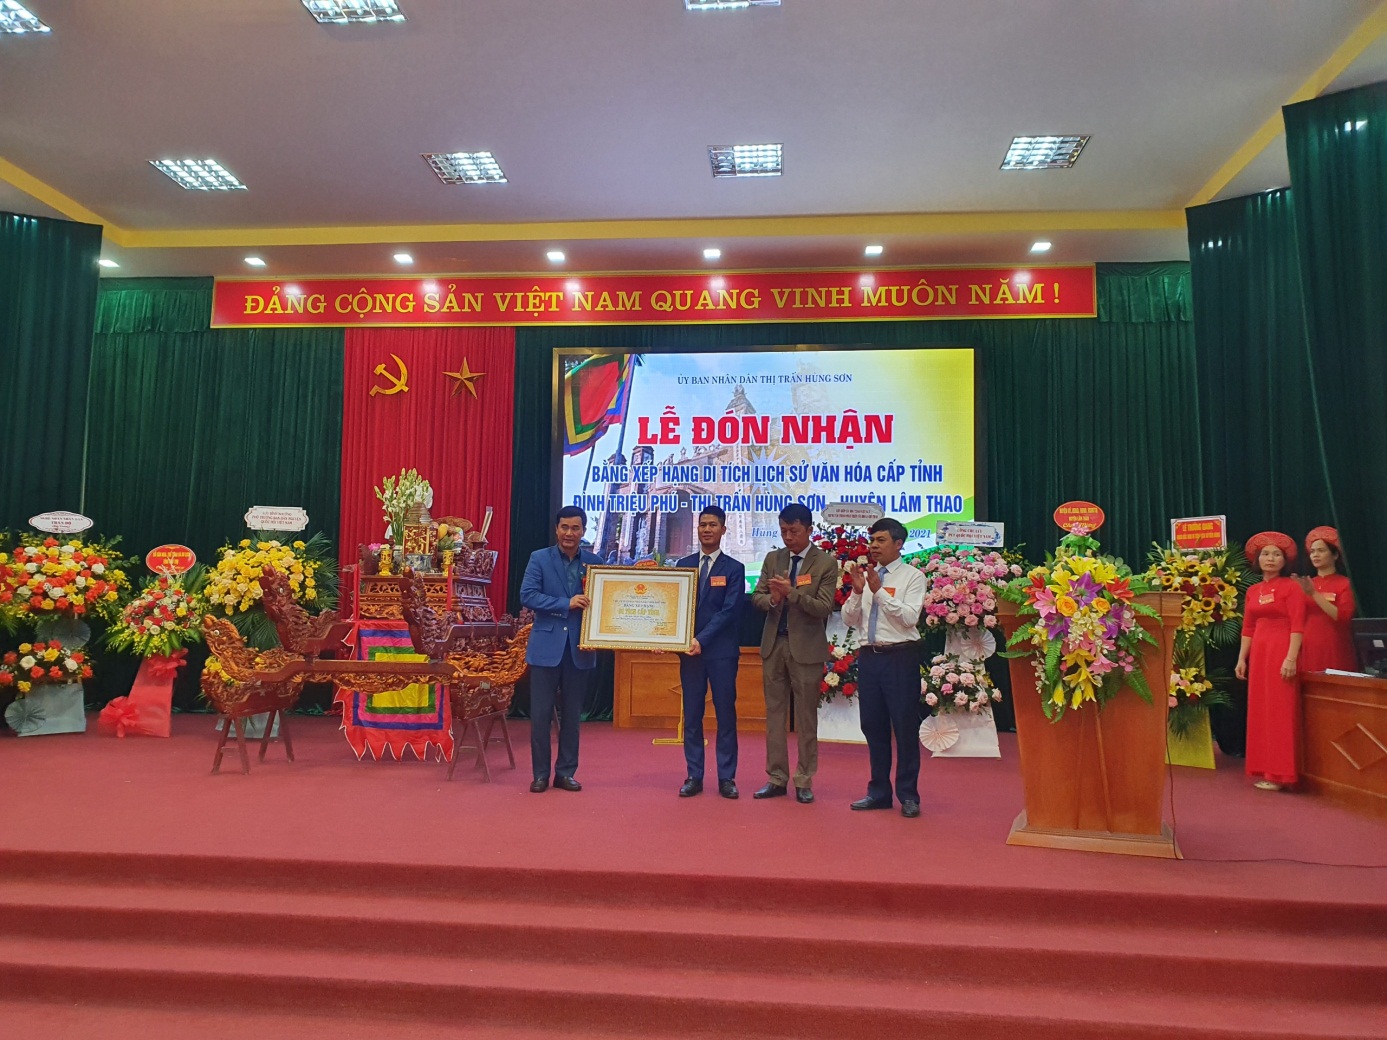 Lễ đón nhận Bằng xếp hạng di tích lịch sử văn hóa cấp tỉnh đình Triệu Phú, thị trấn Hùng Sơn, huyện Lâm Thao, tỉnh Phú Thọ.